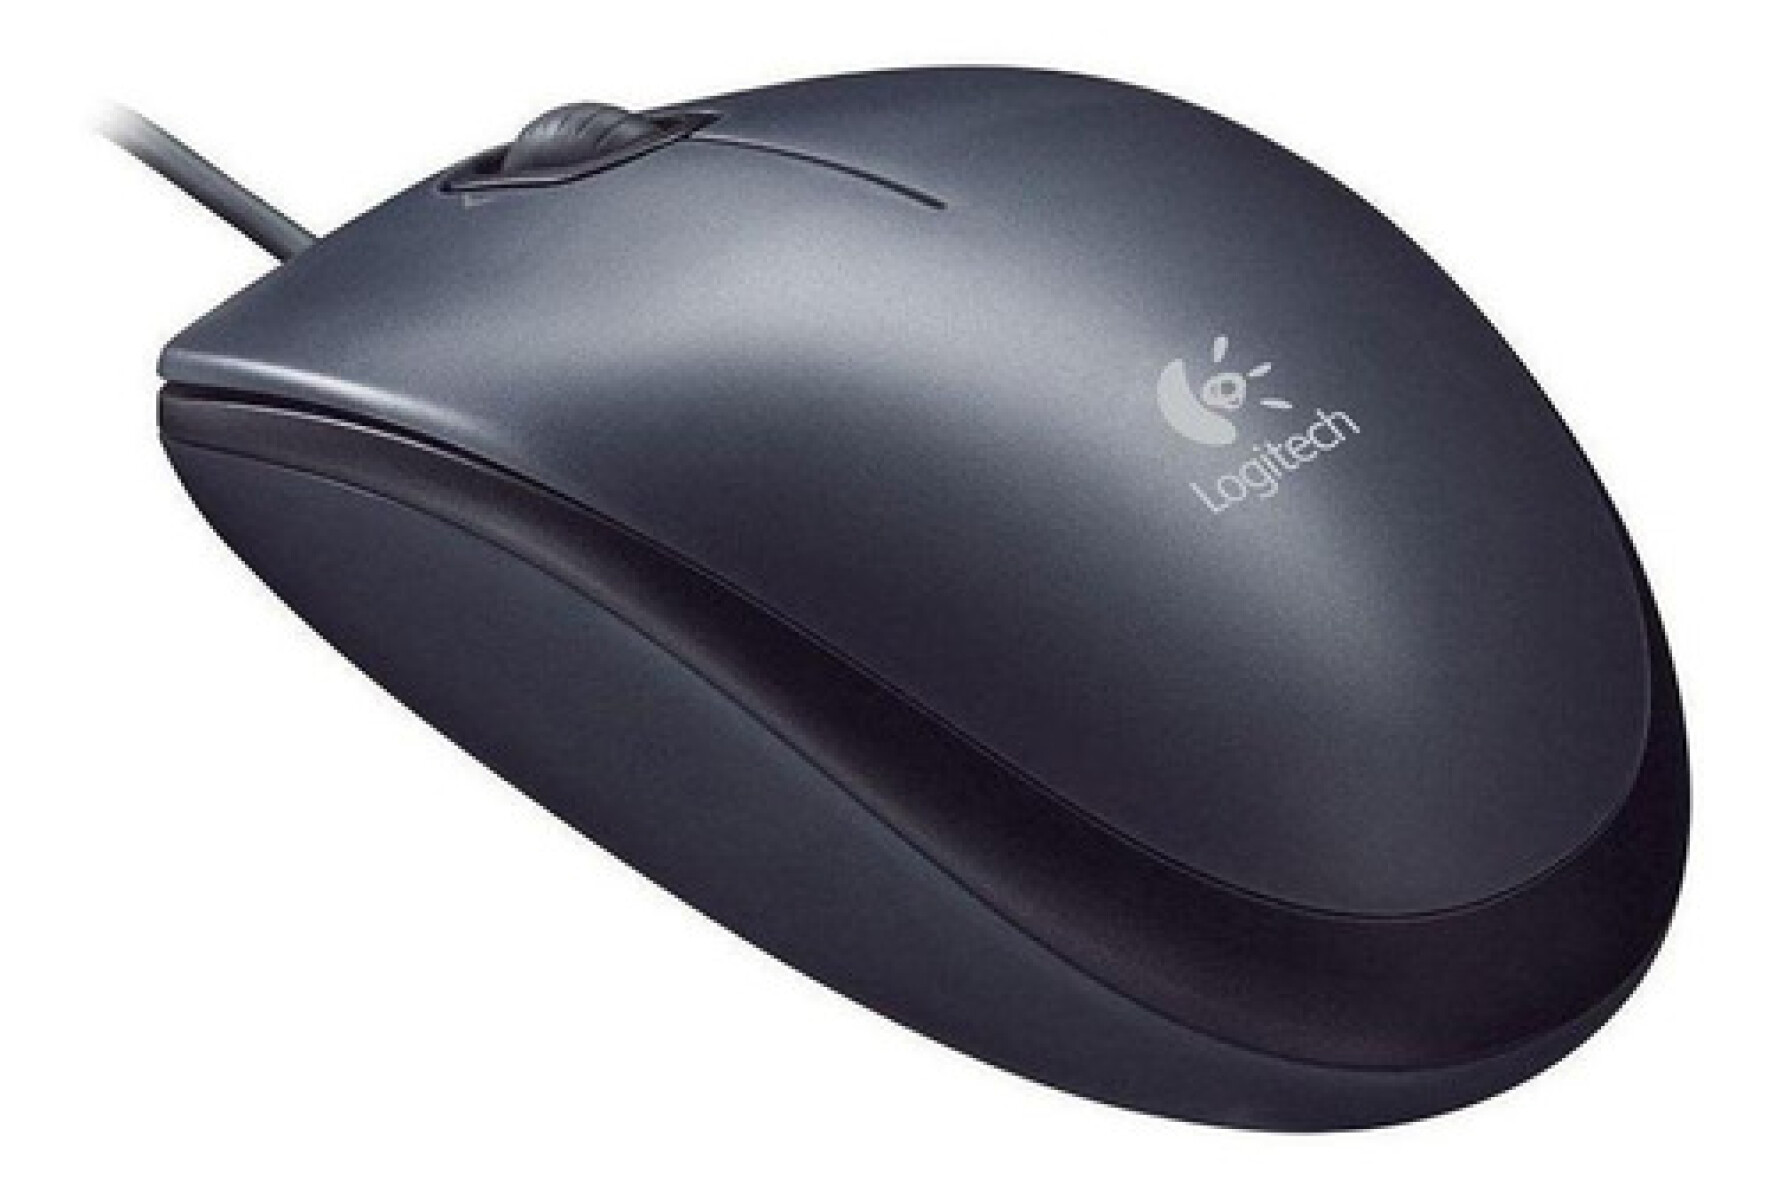 Mouse Logitech M100 Negro - 3009 